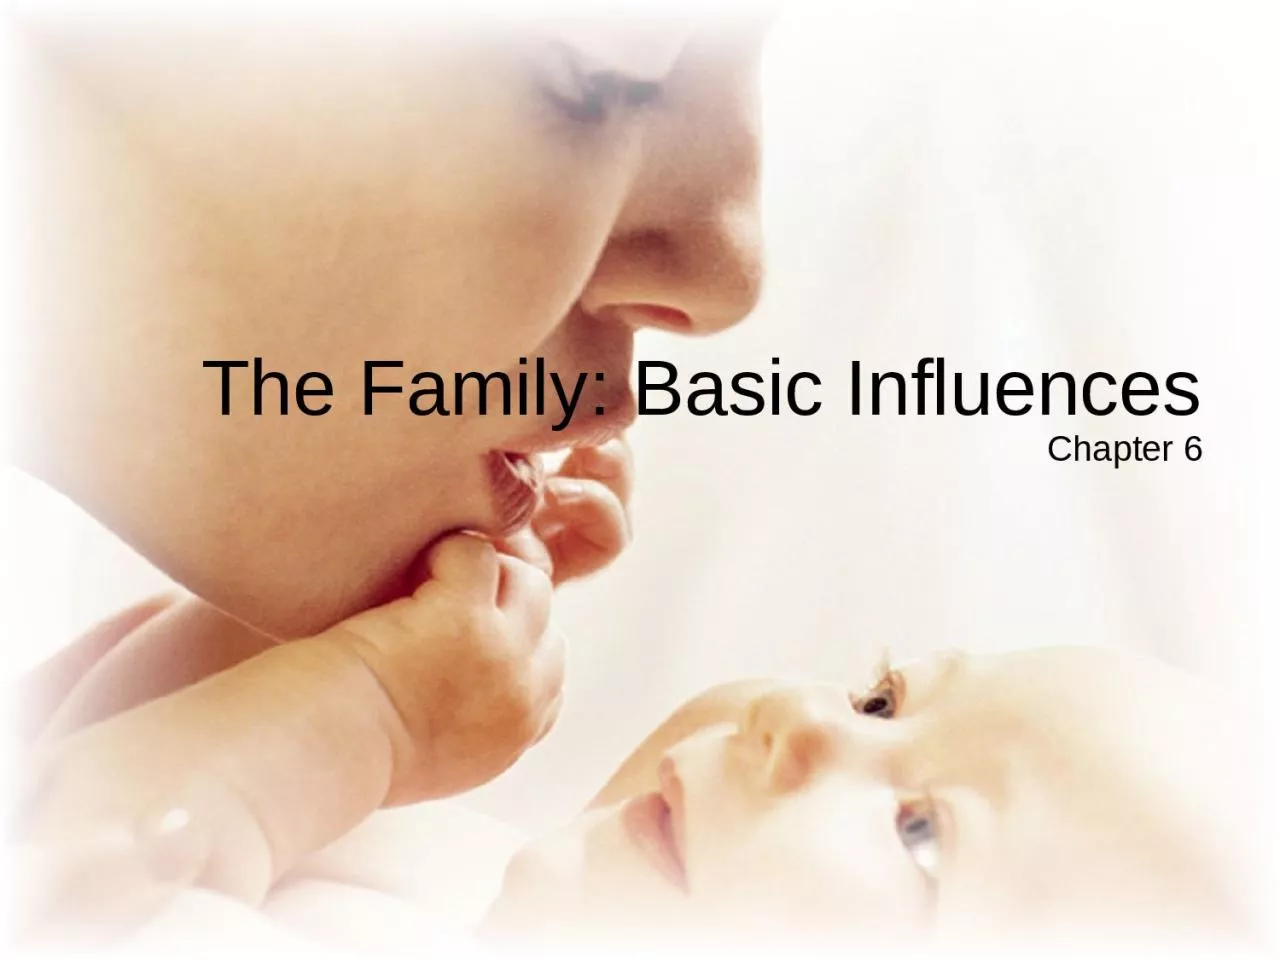 The Family: Basic Influences